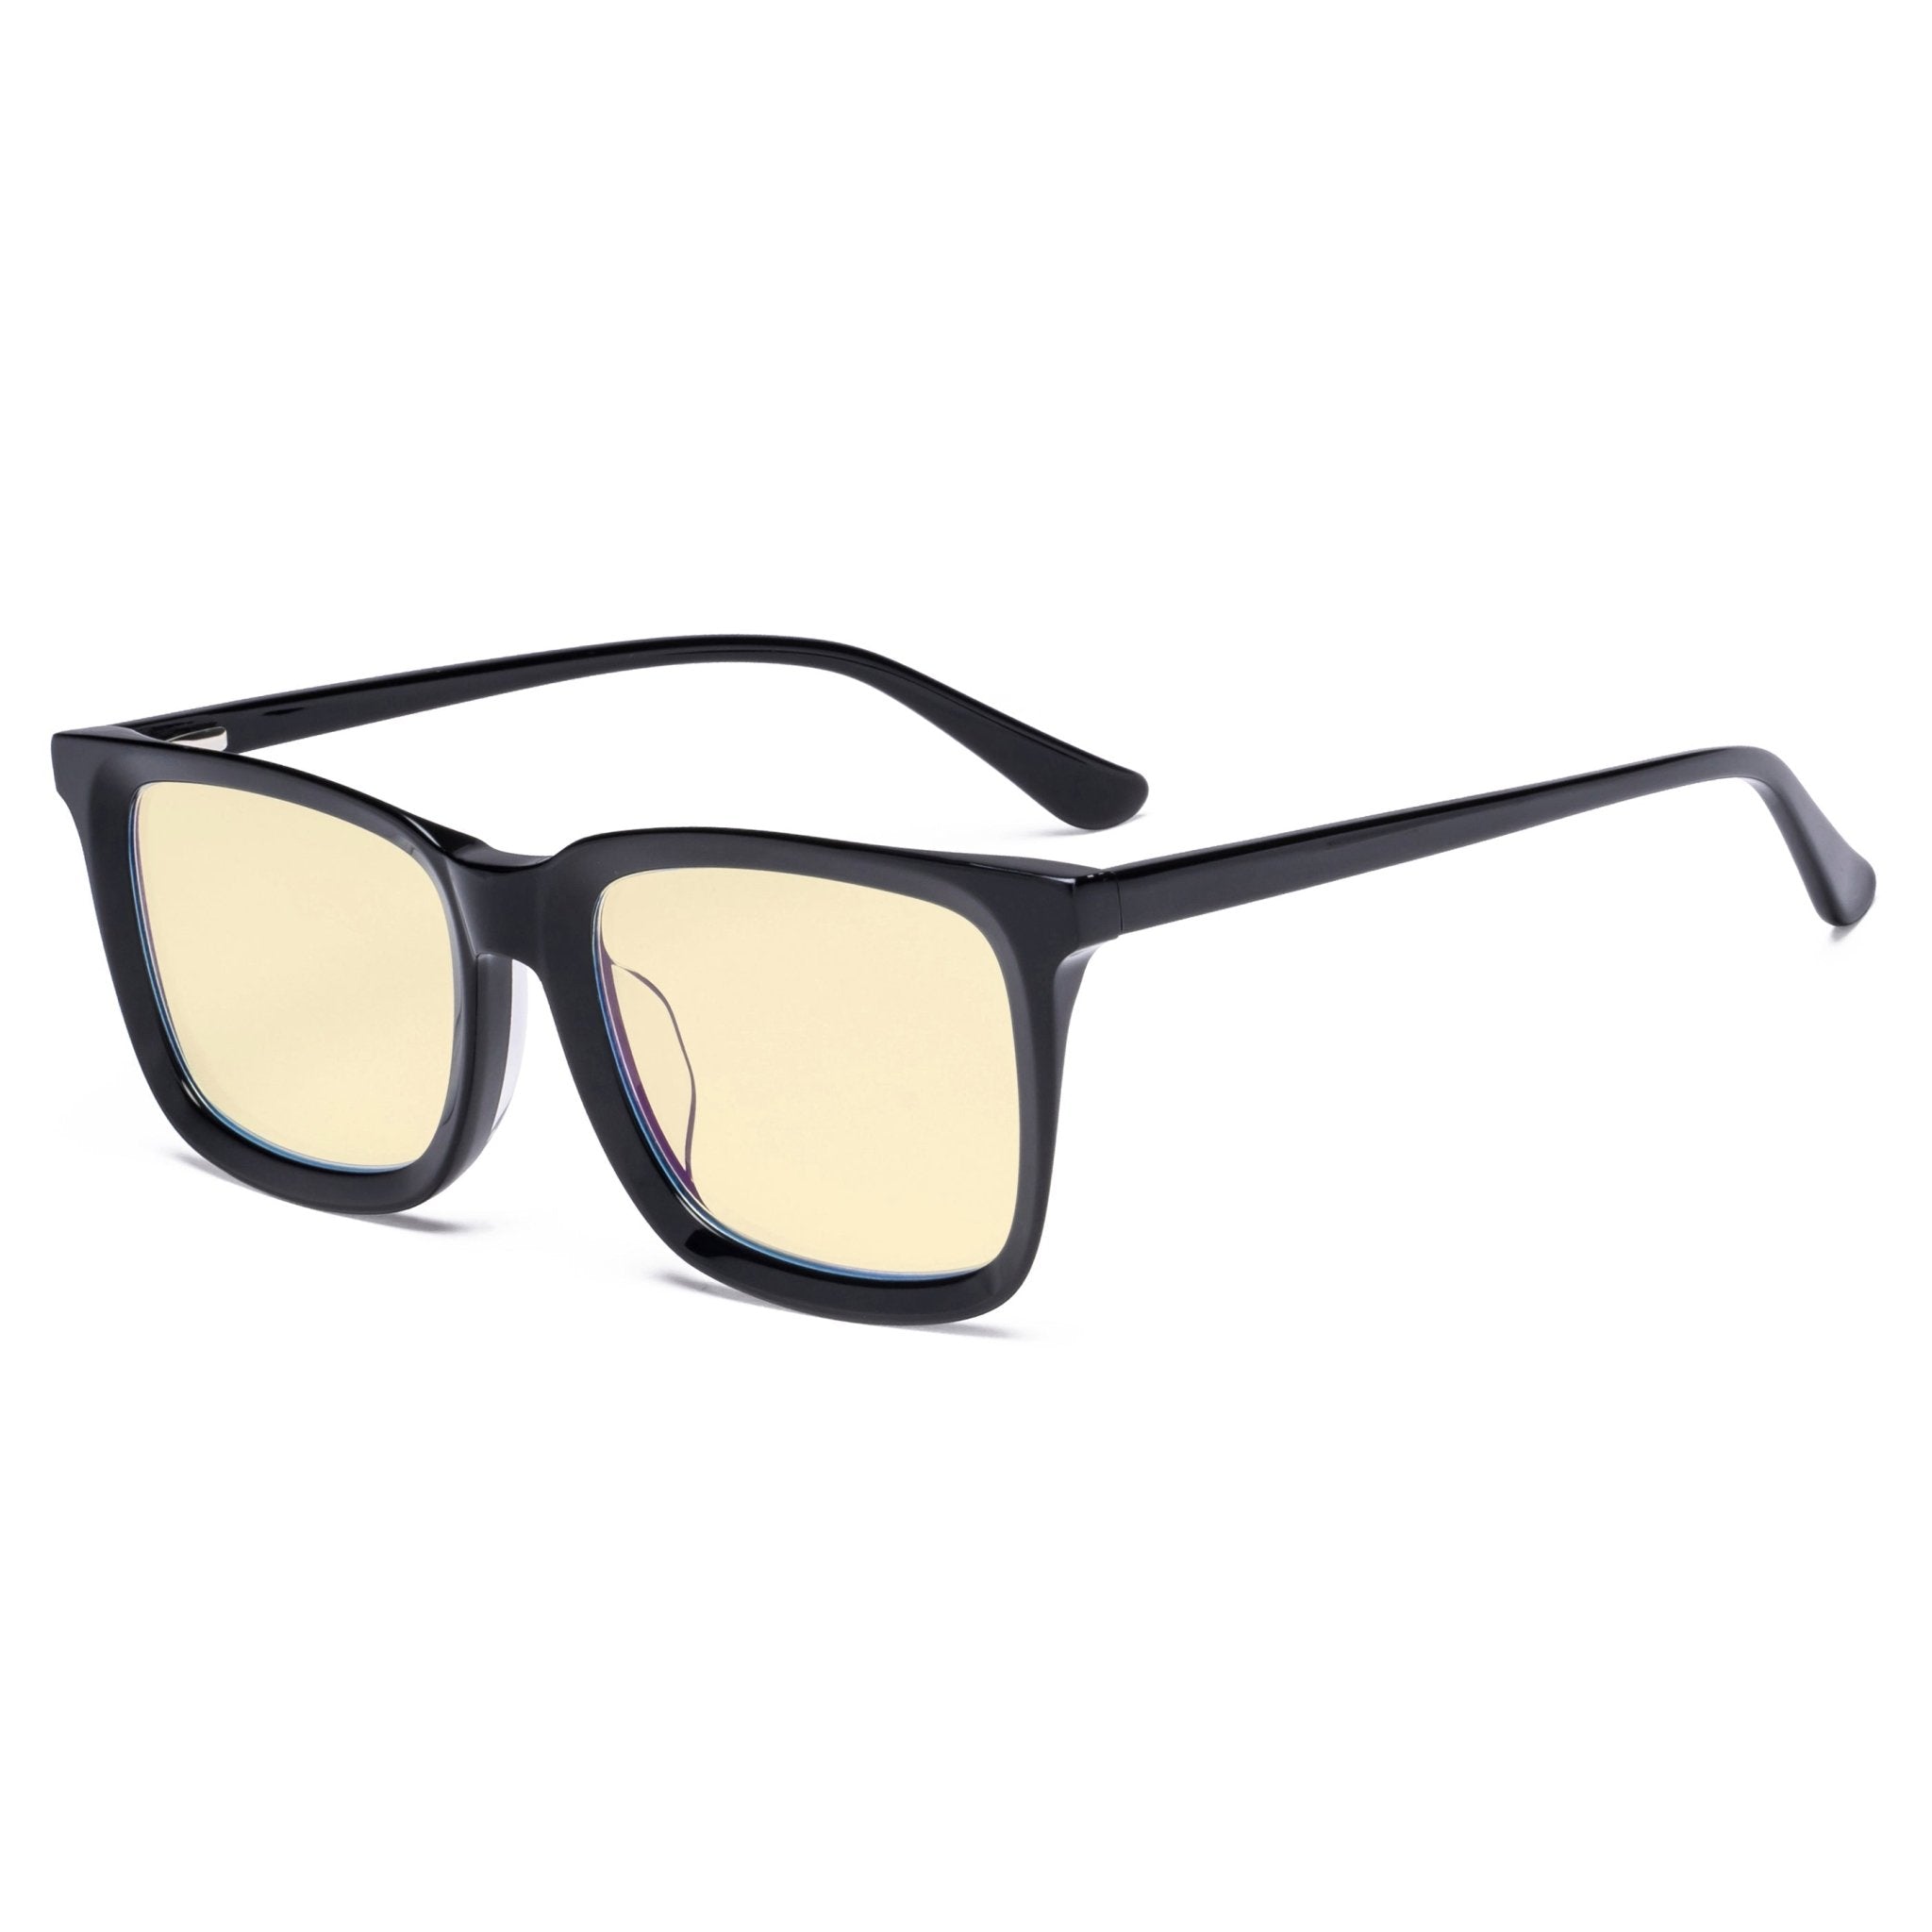 Ramirez Square Black Non-Rx Sunglasses | Men's Sunglasses | Payne Glasses |  Reading sunglasses, Bifocal, Prescription sunglasses